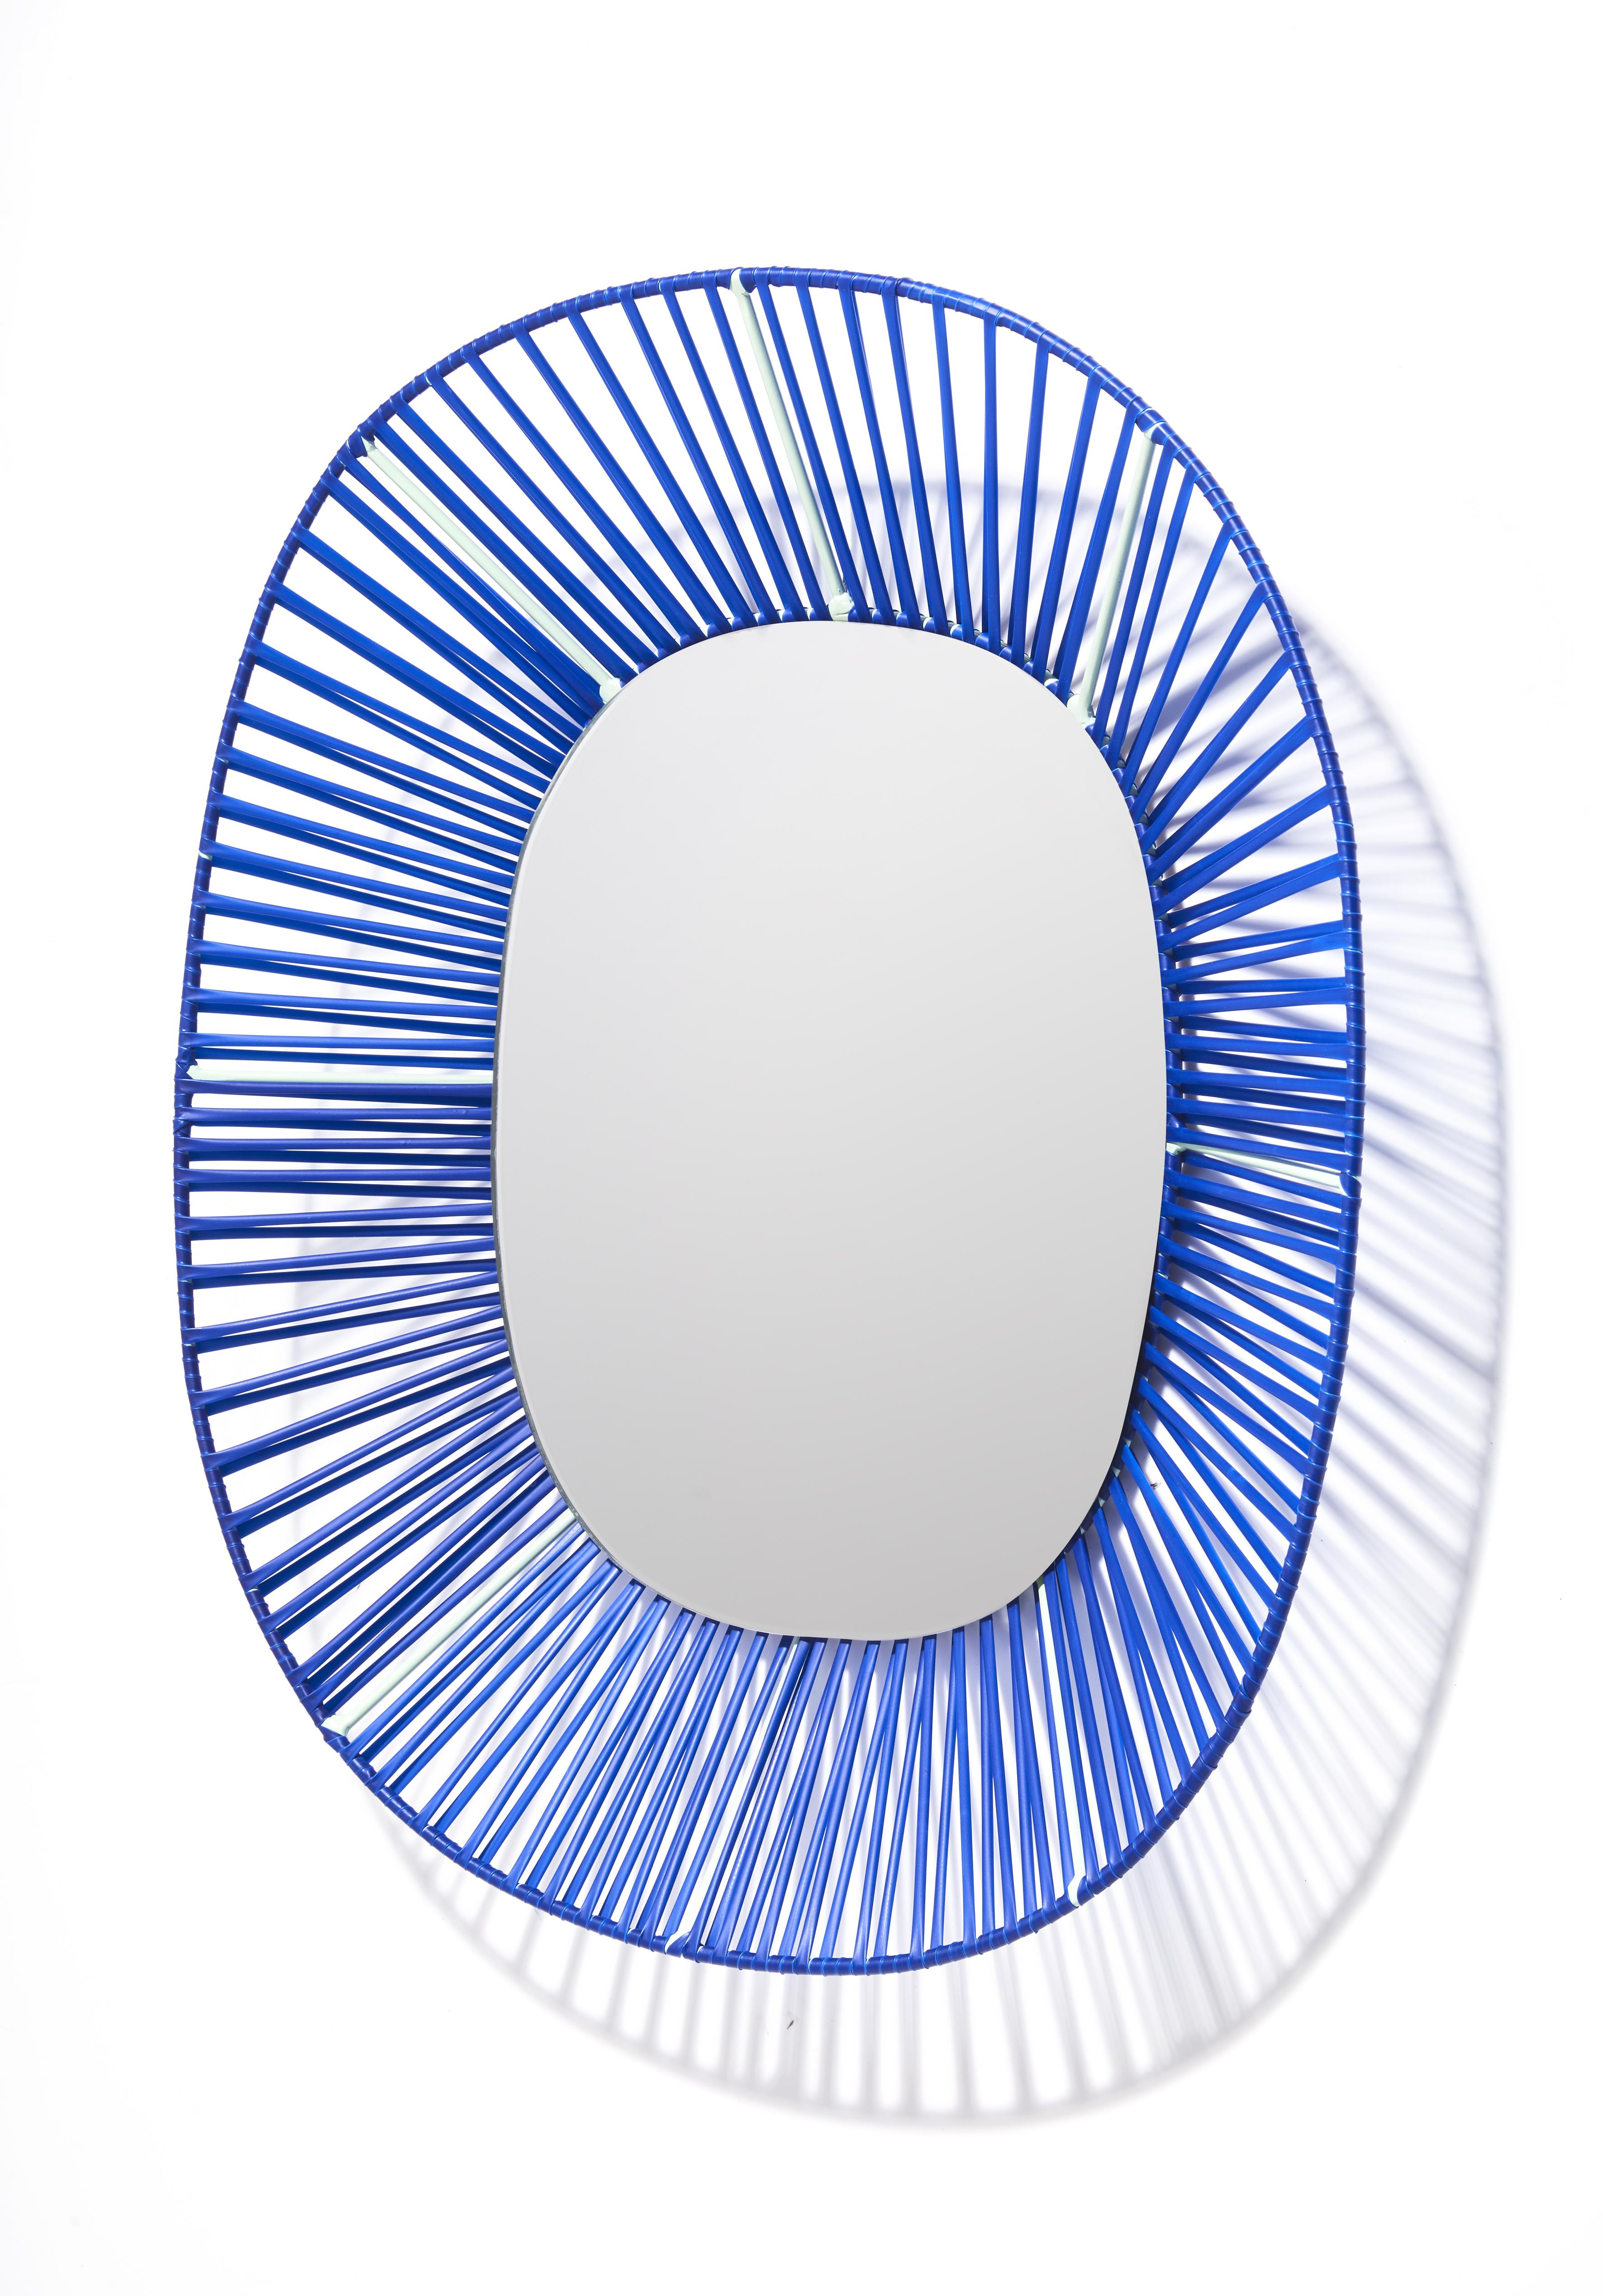 Cesta ovaler spiegel von Pauline Deltour (Moderne) im Angebot